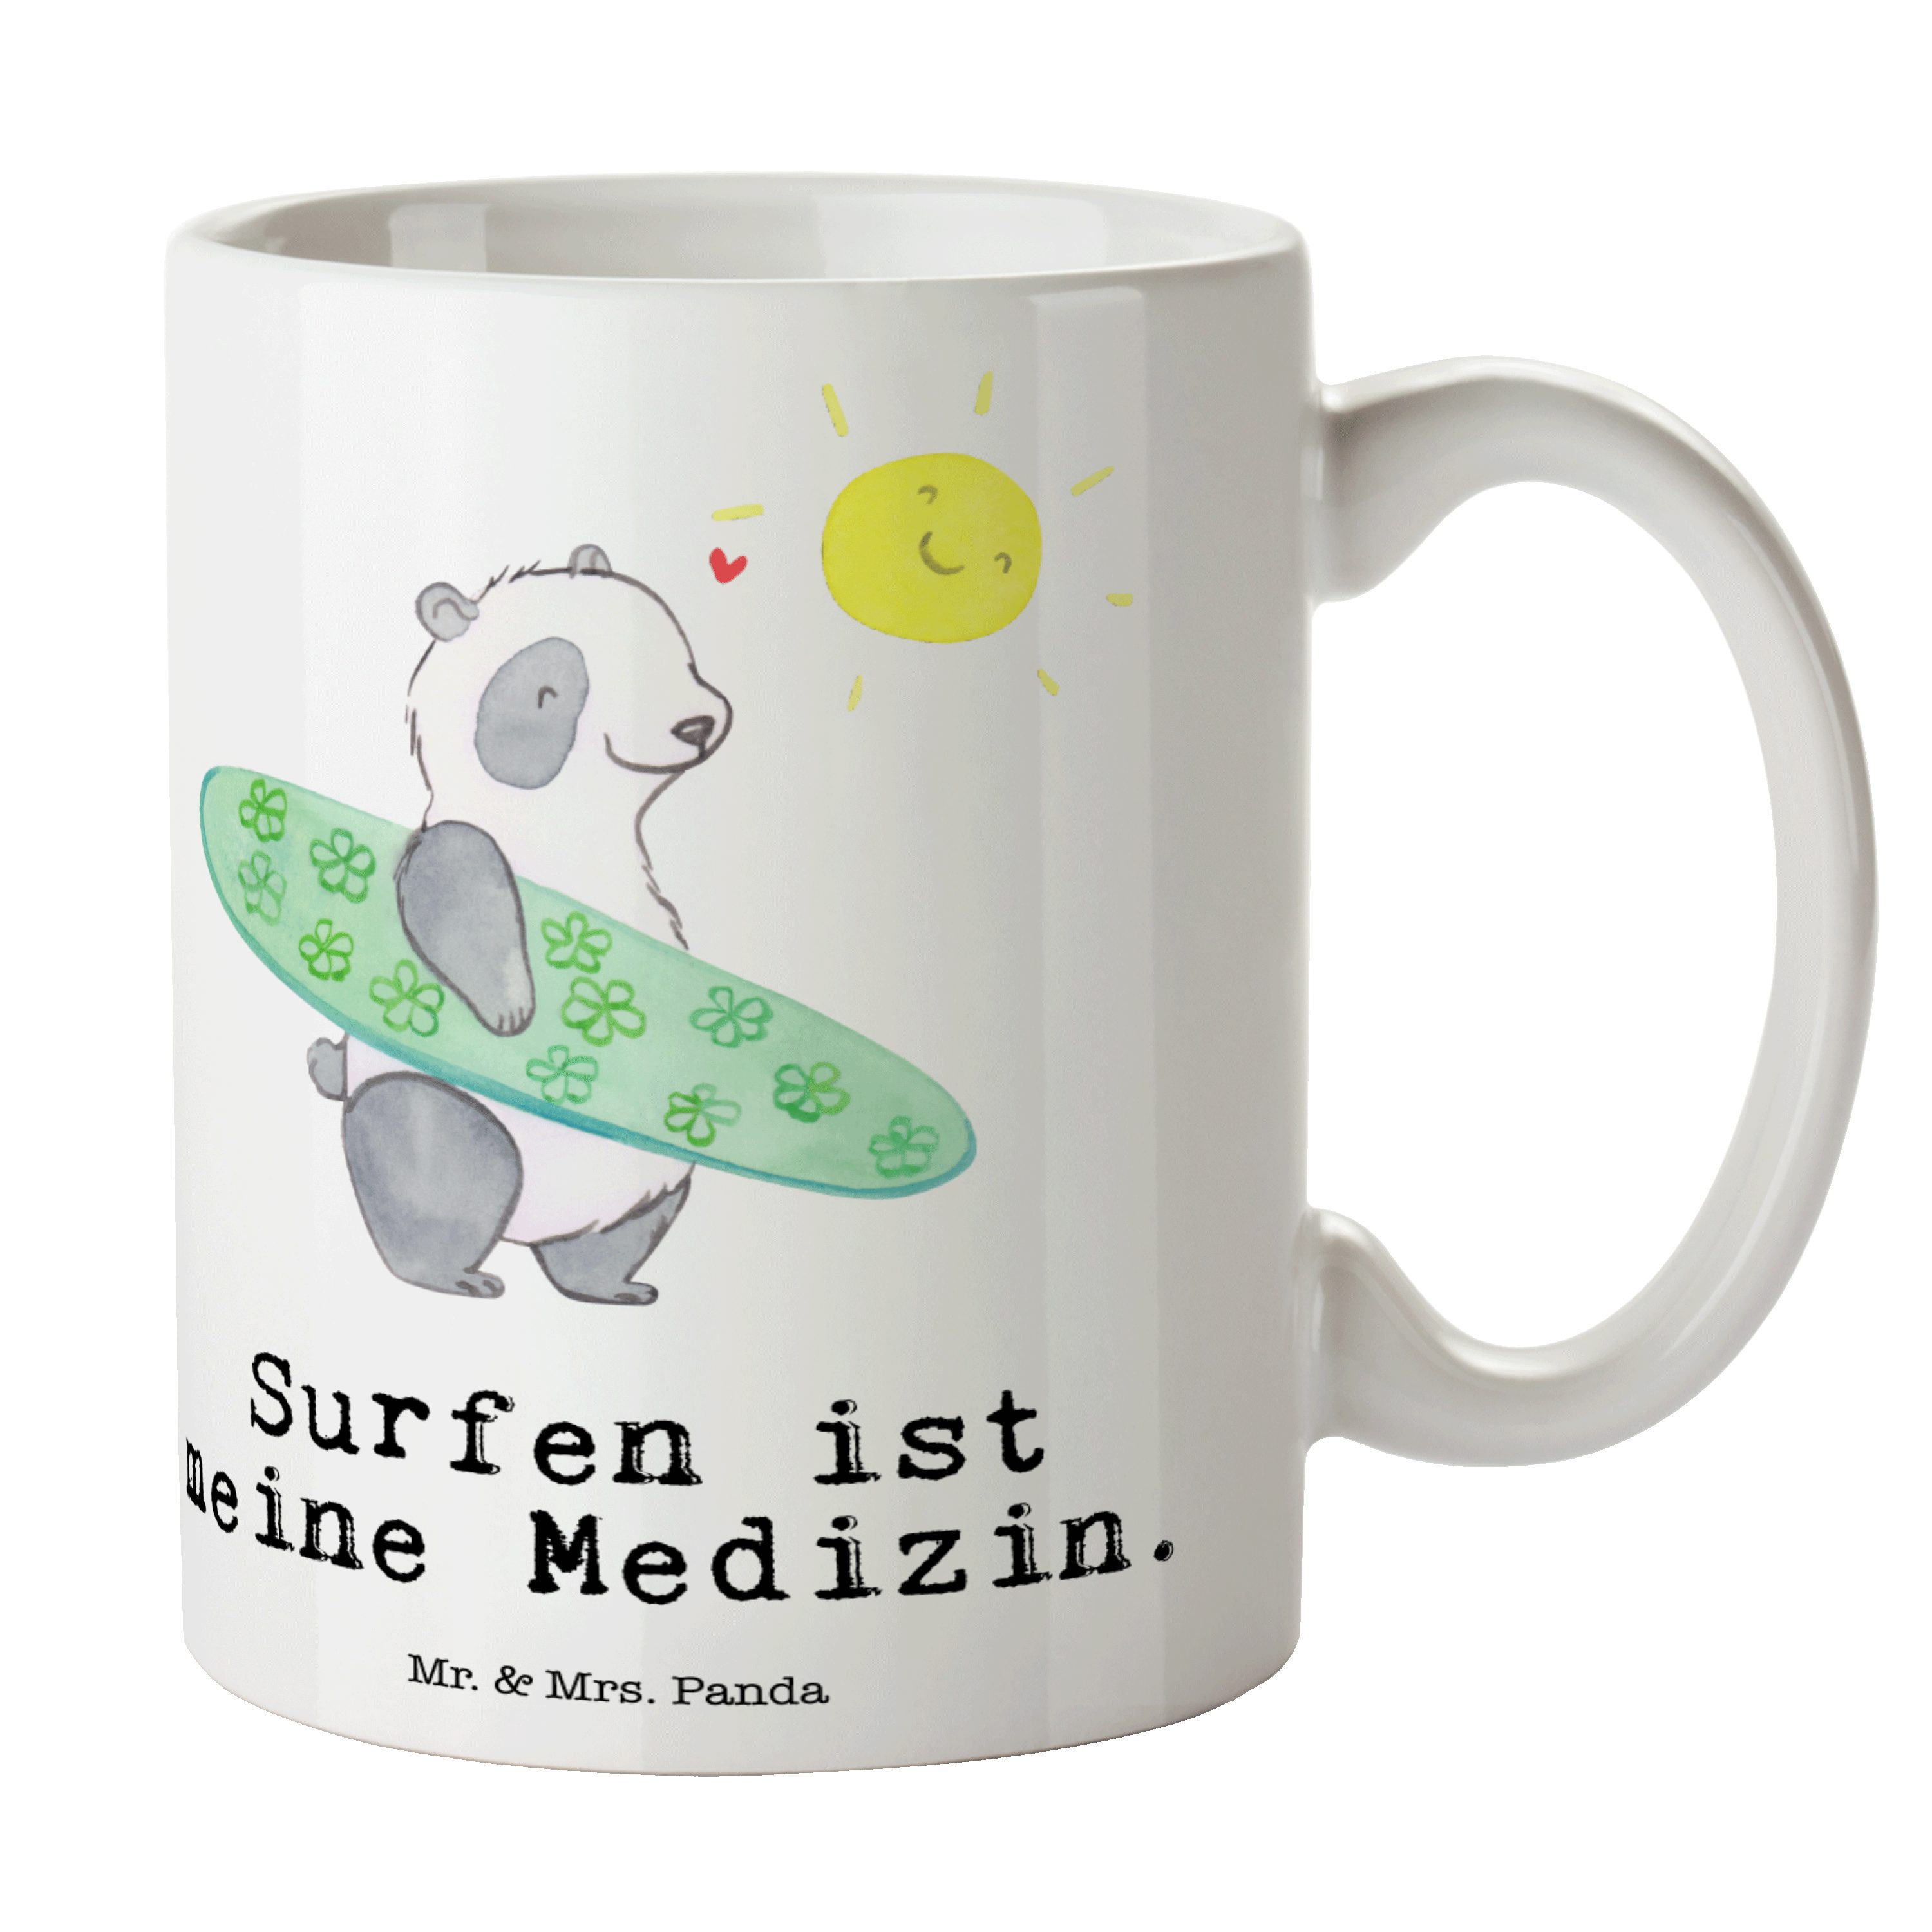 Mr. & Mrs. Panda Tasse Panda Surfen Medizin - Weiß - Geschenk, Geschenk Tasse, Tasse Motive, Keramik